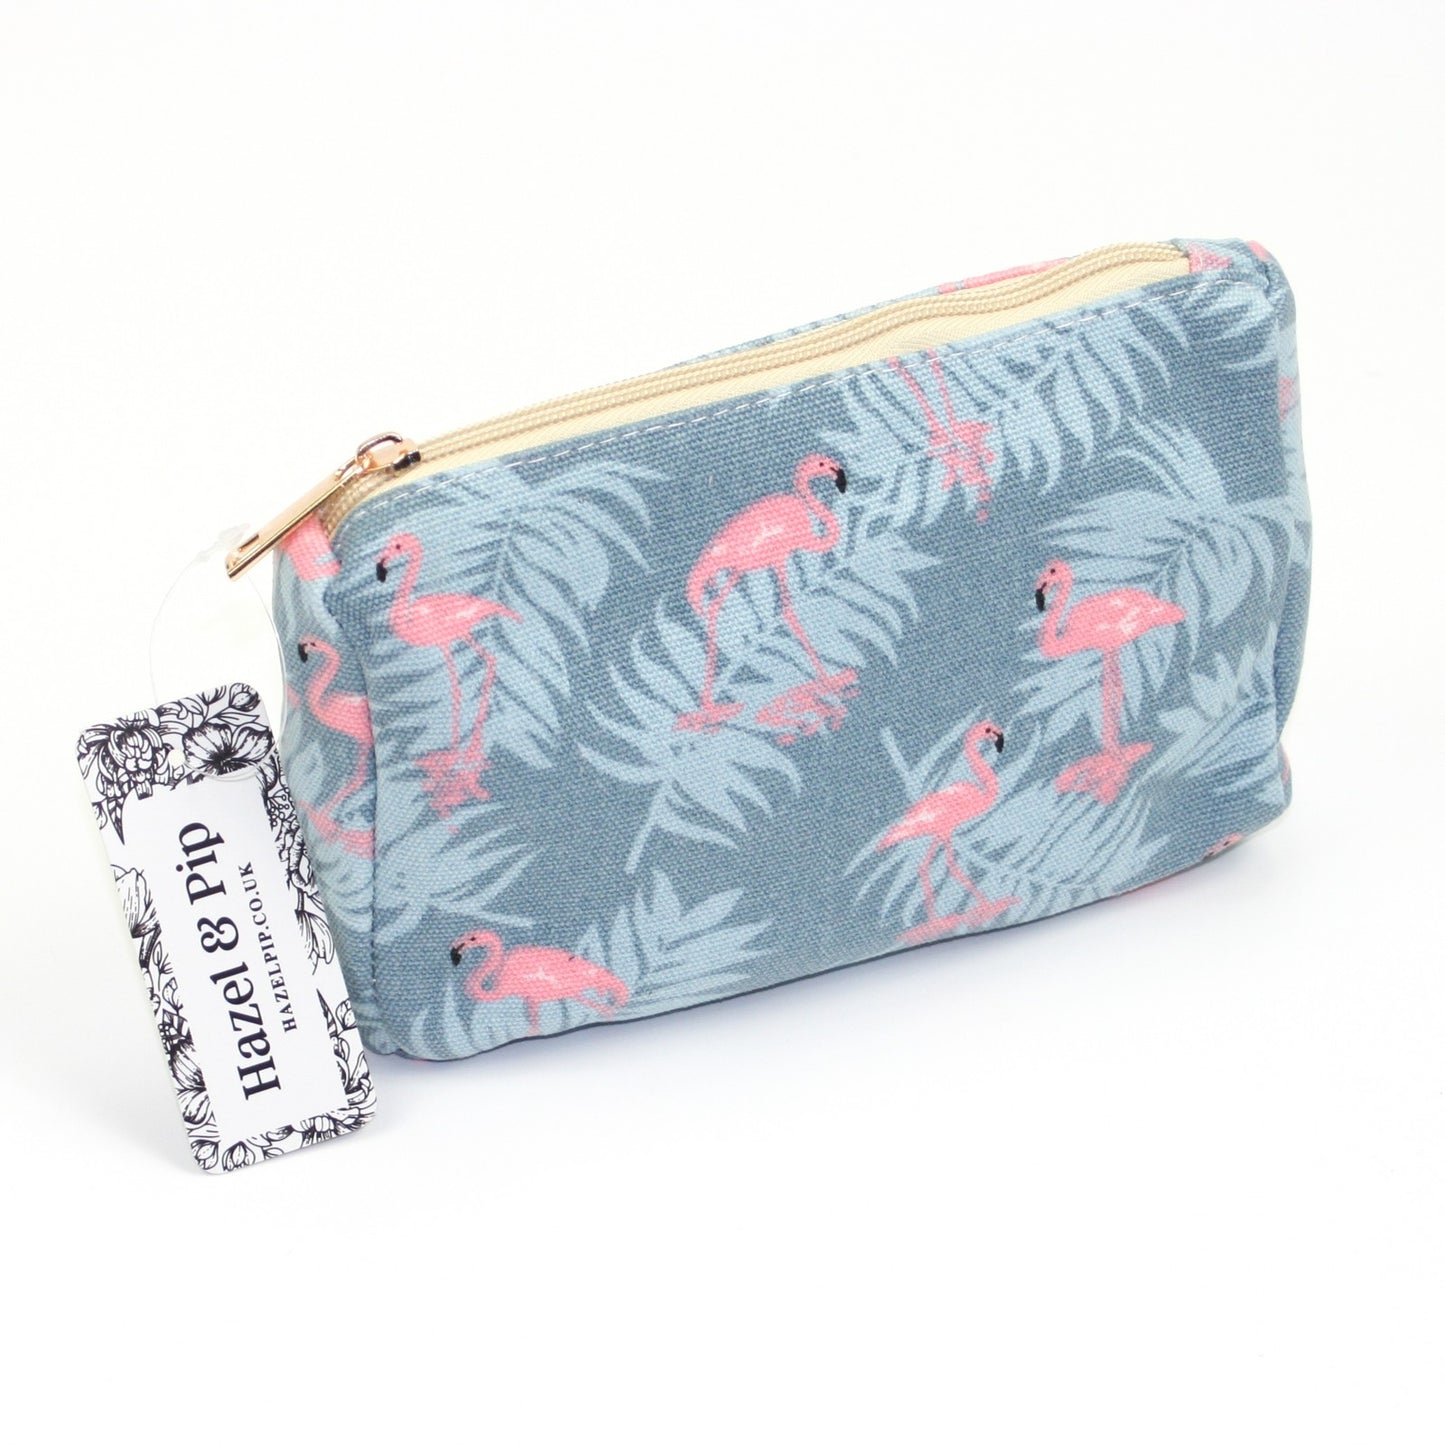 Tropical flamingo print design make up bag.